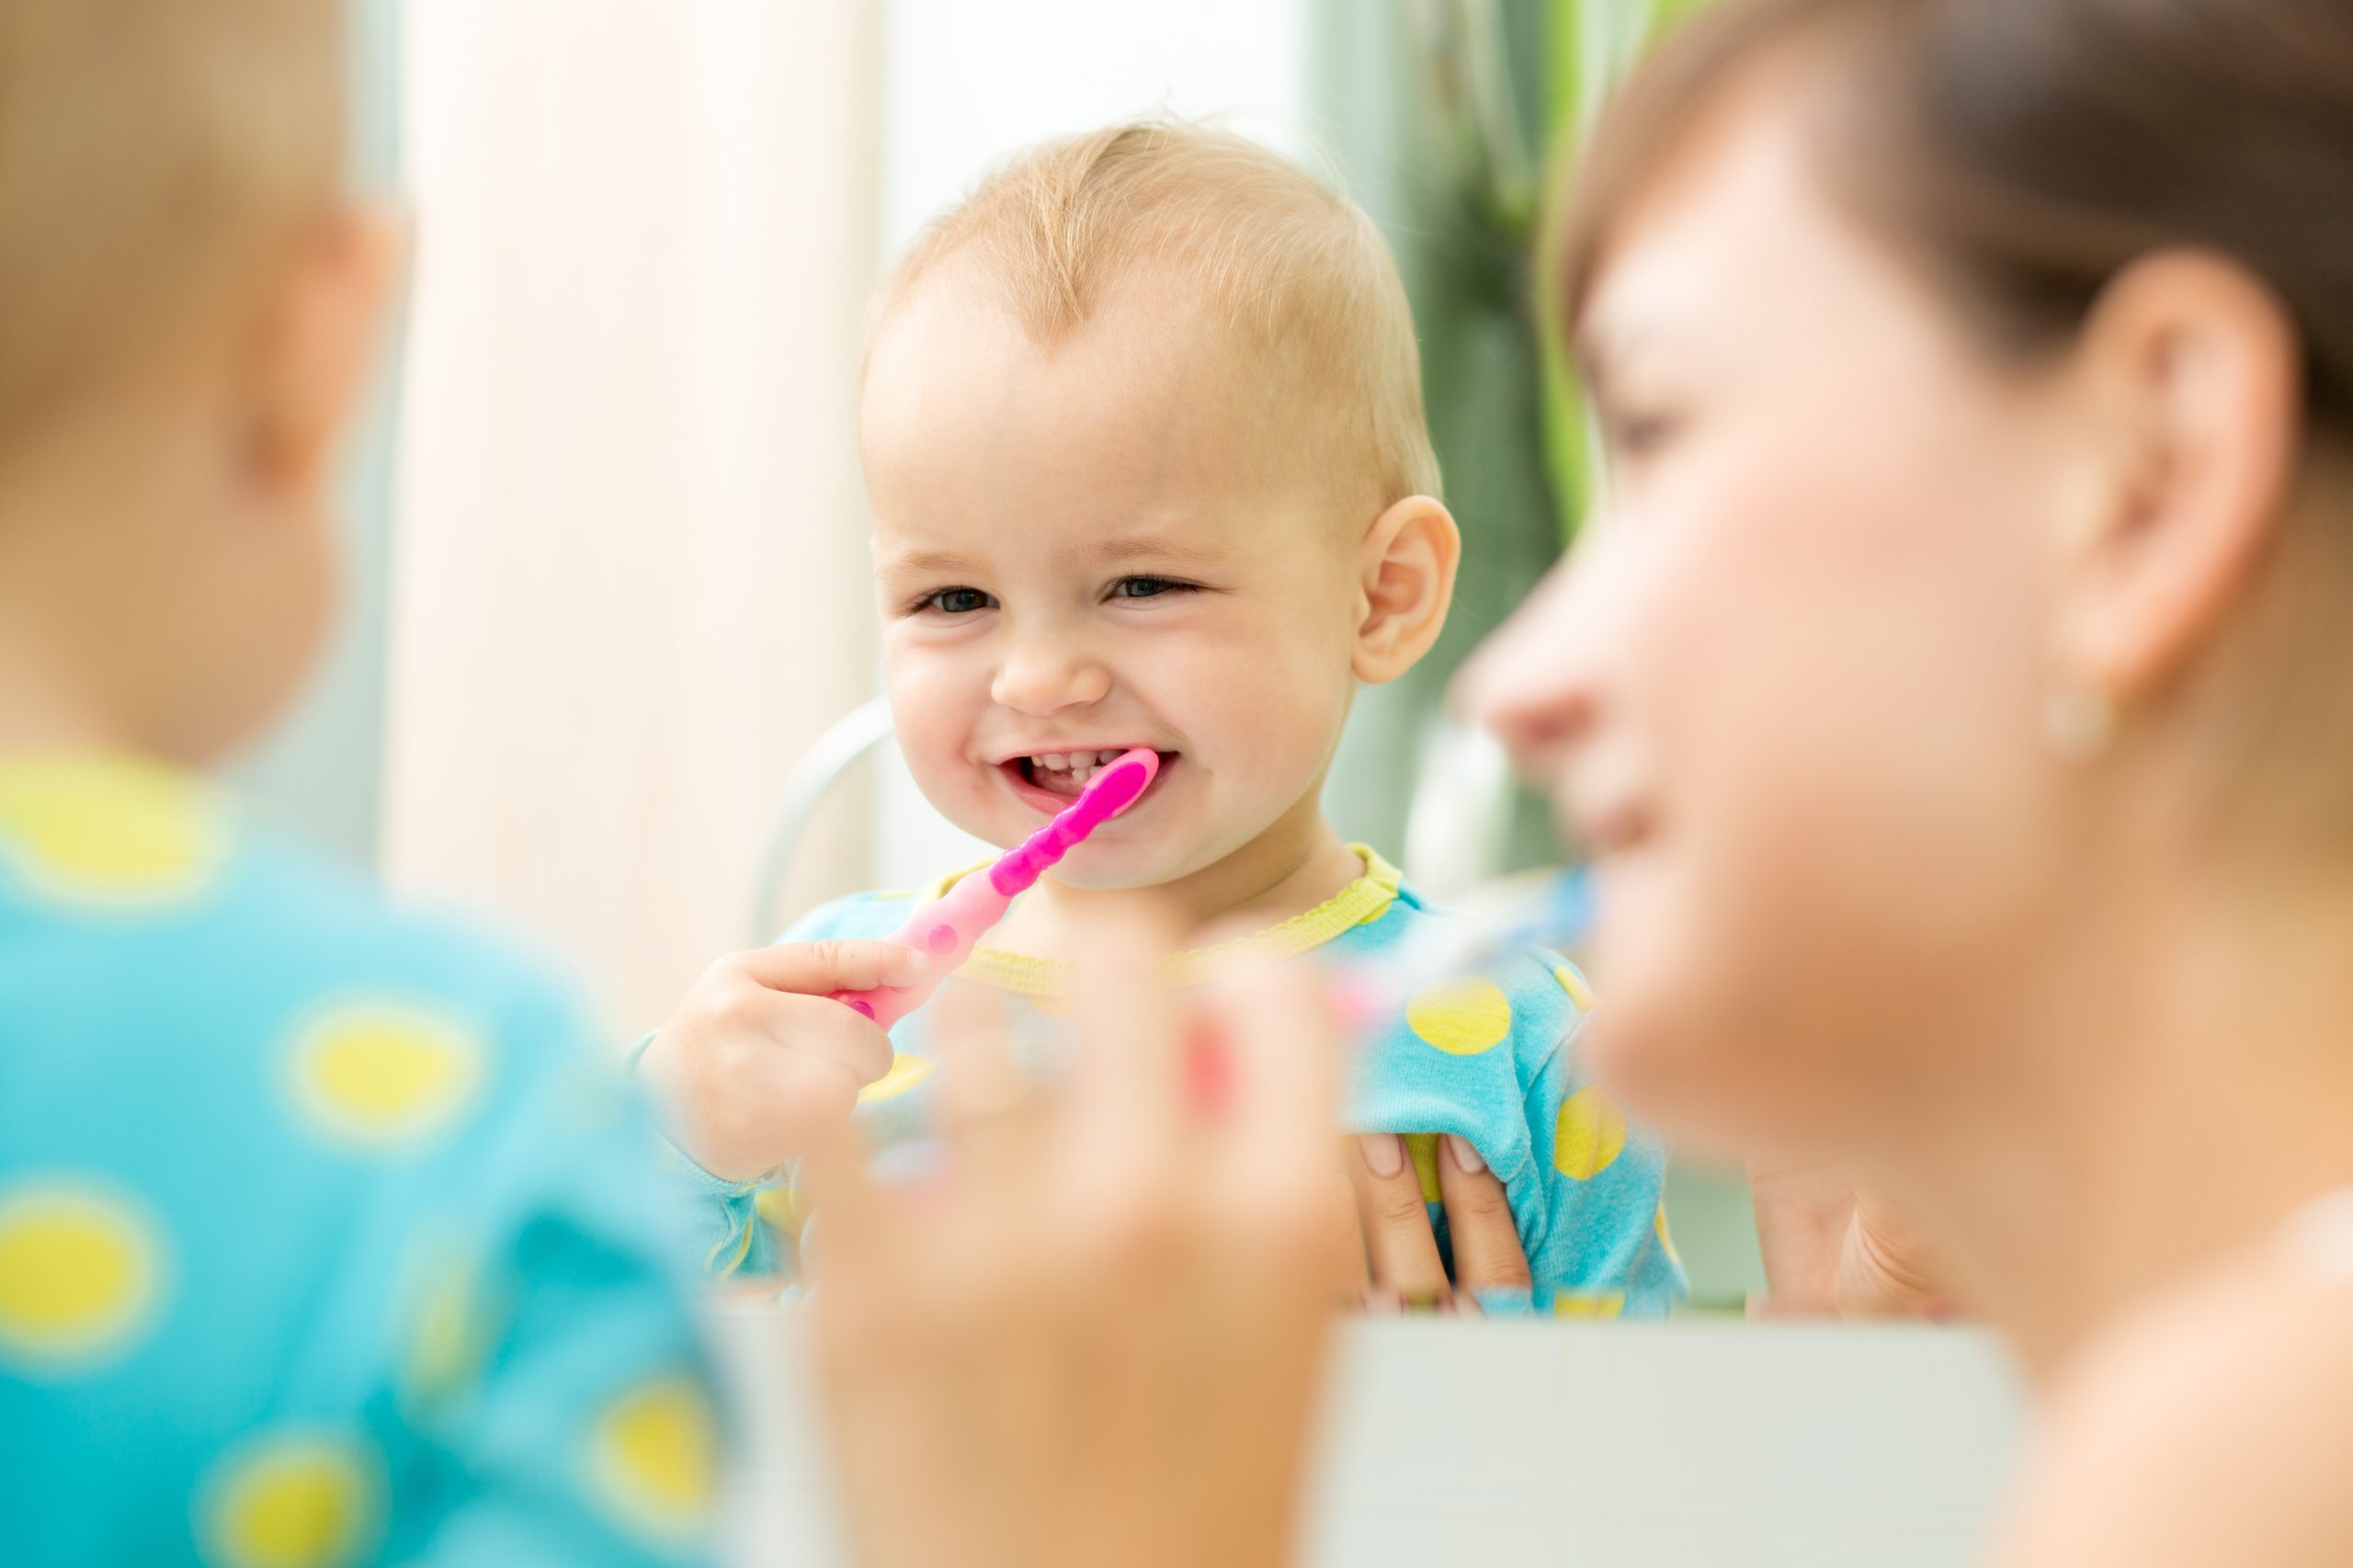 Les dents de bébé : quand et comment les brosser ? Dentifrice bébé